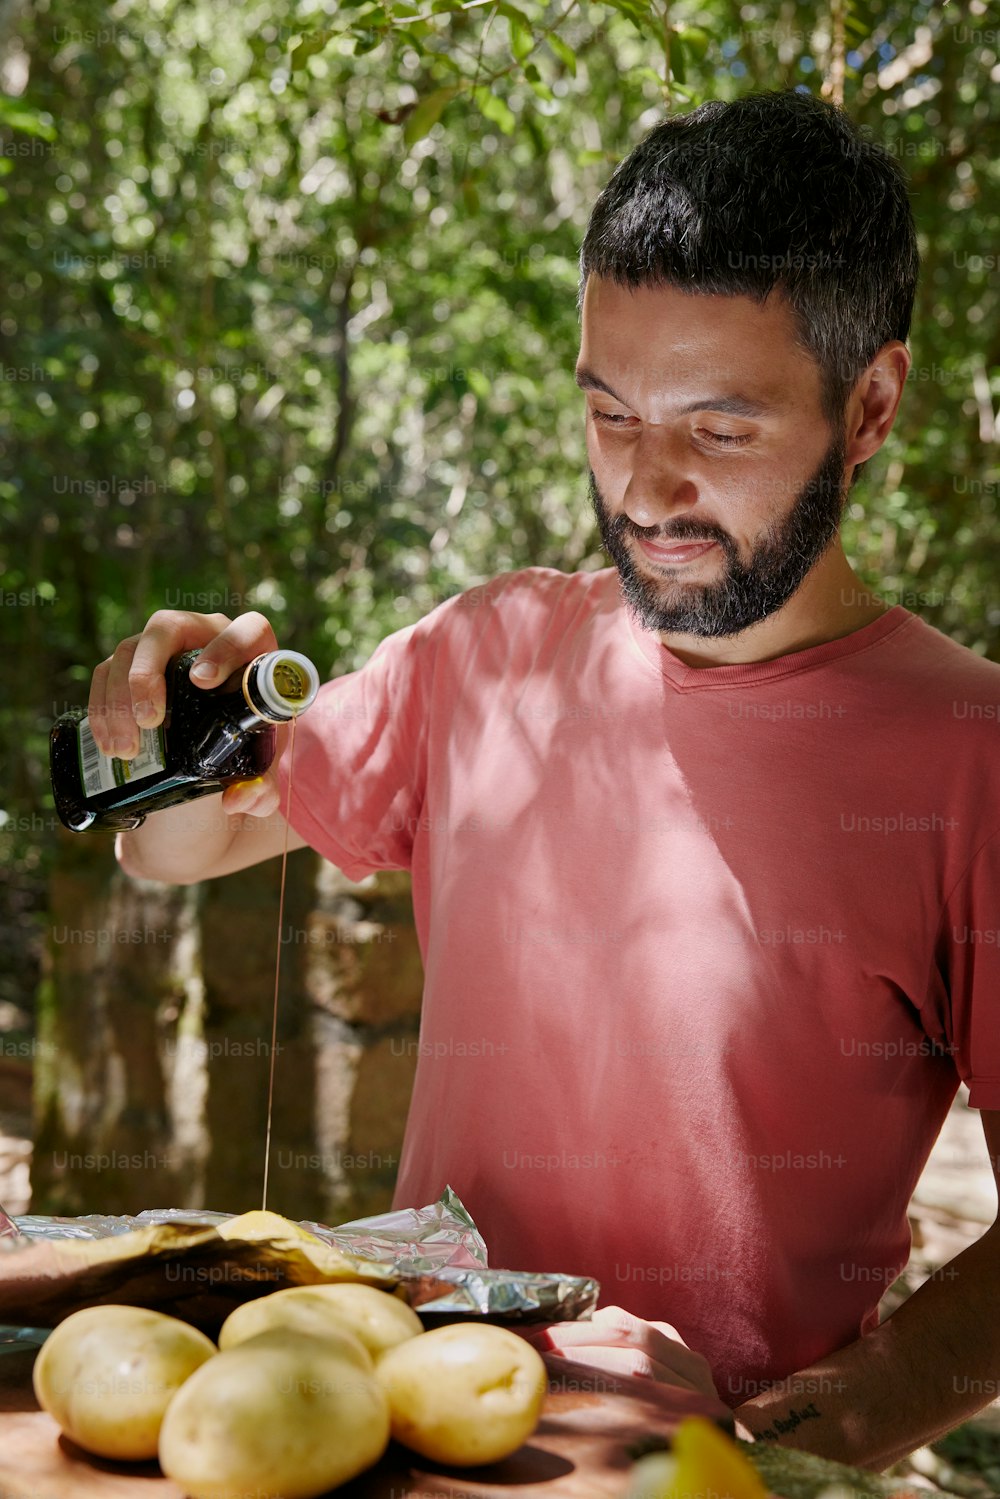 Un homme avec une barbe verse quelque chose dans une bouteille